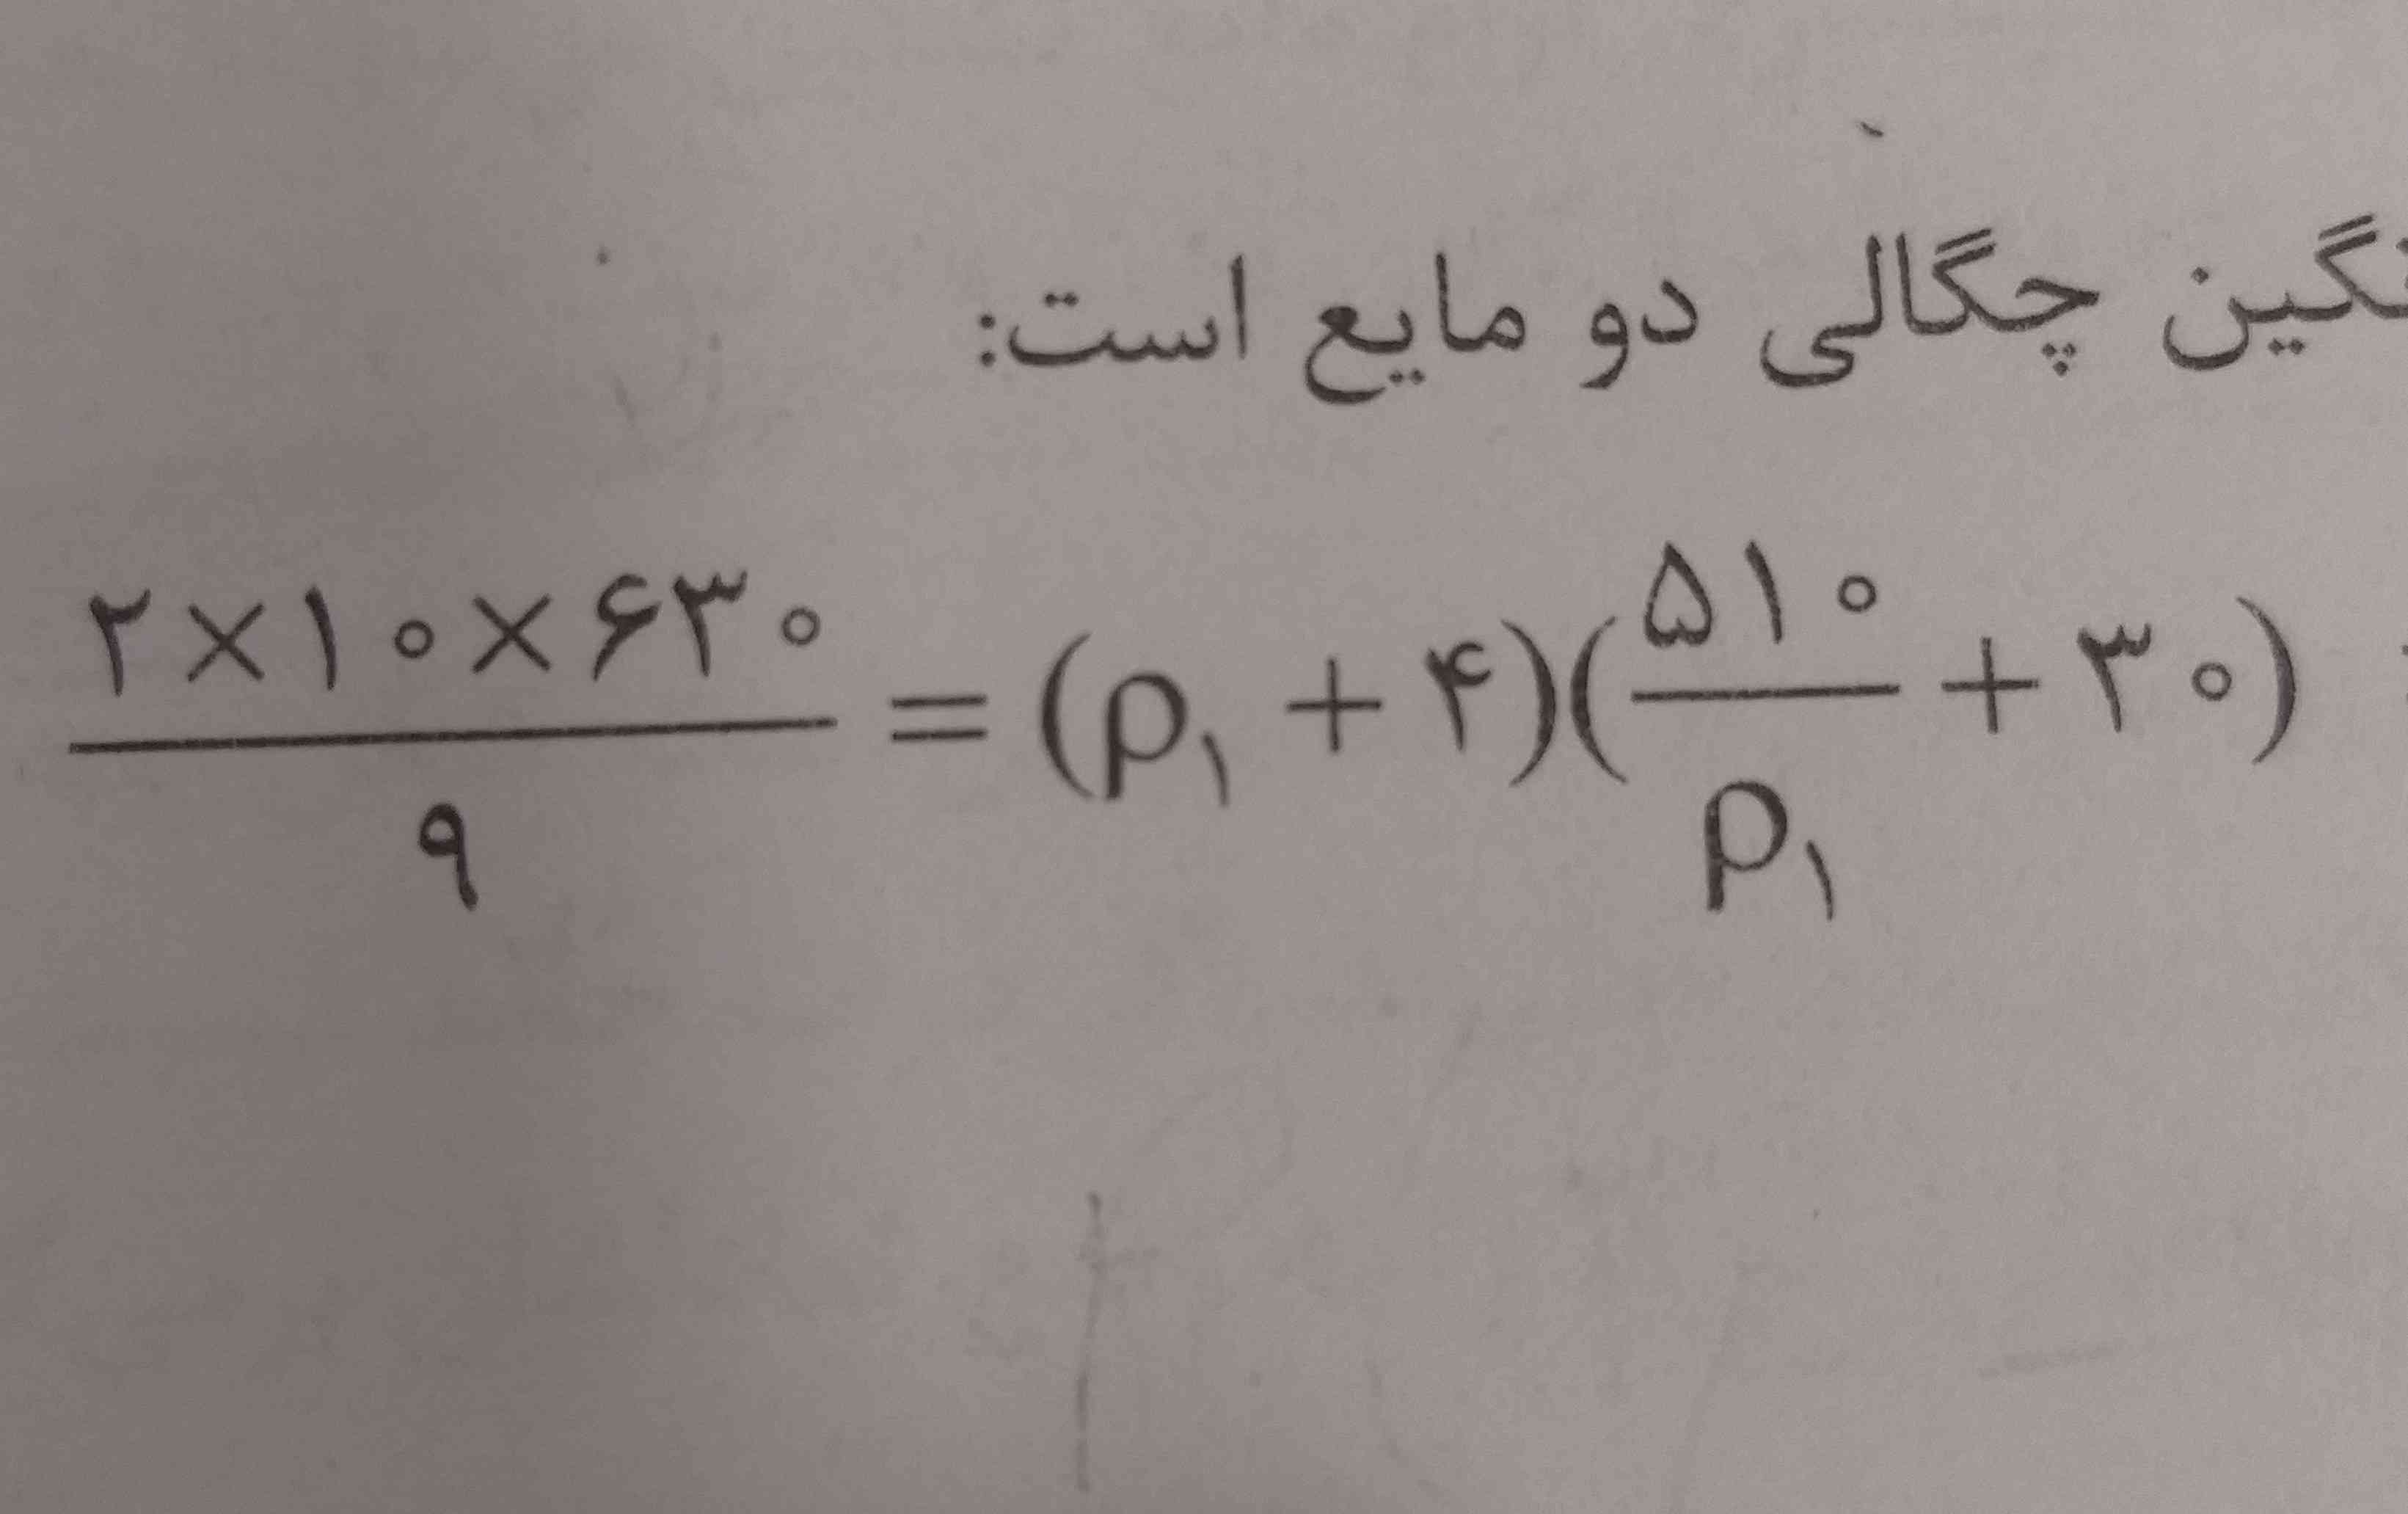 جواب این فرمت محاسبات چطوربدست میاد راحل گام به گام =معرکه